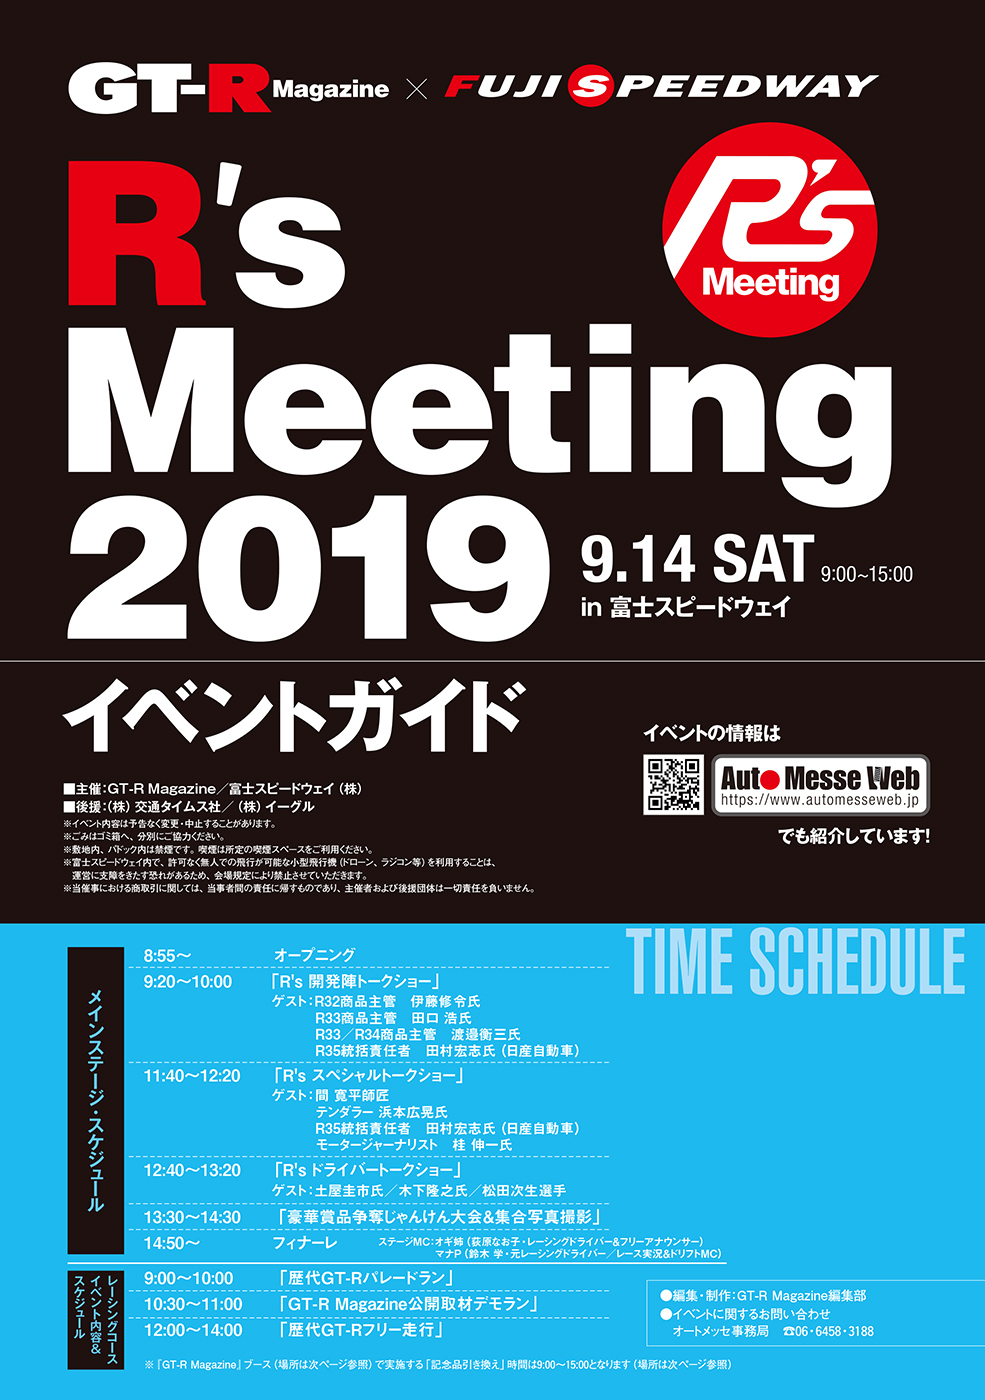 R's Meeting 2019が富士スピードウェイで開催